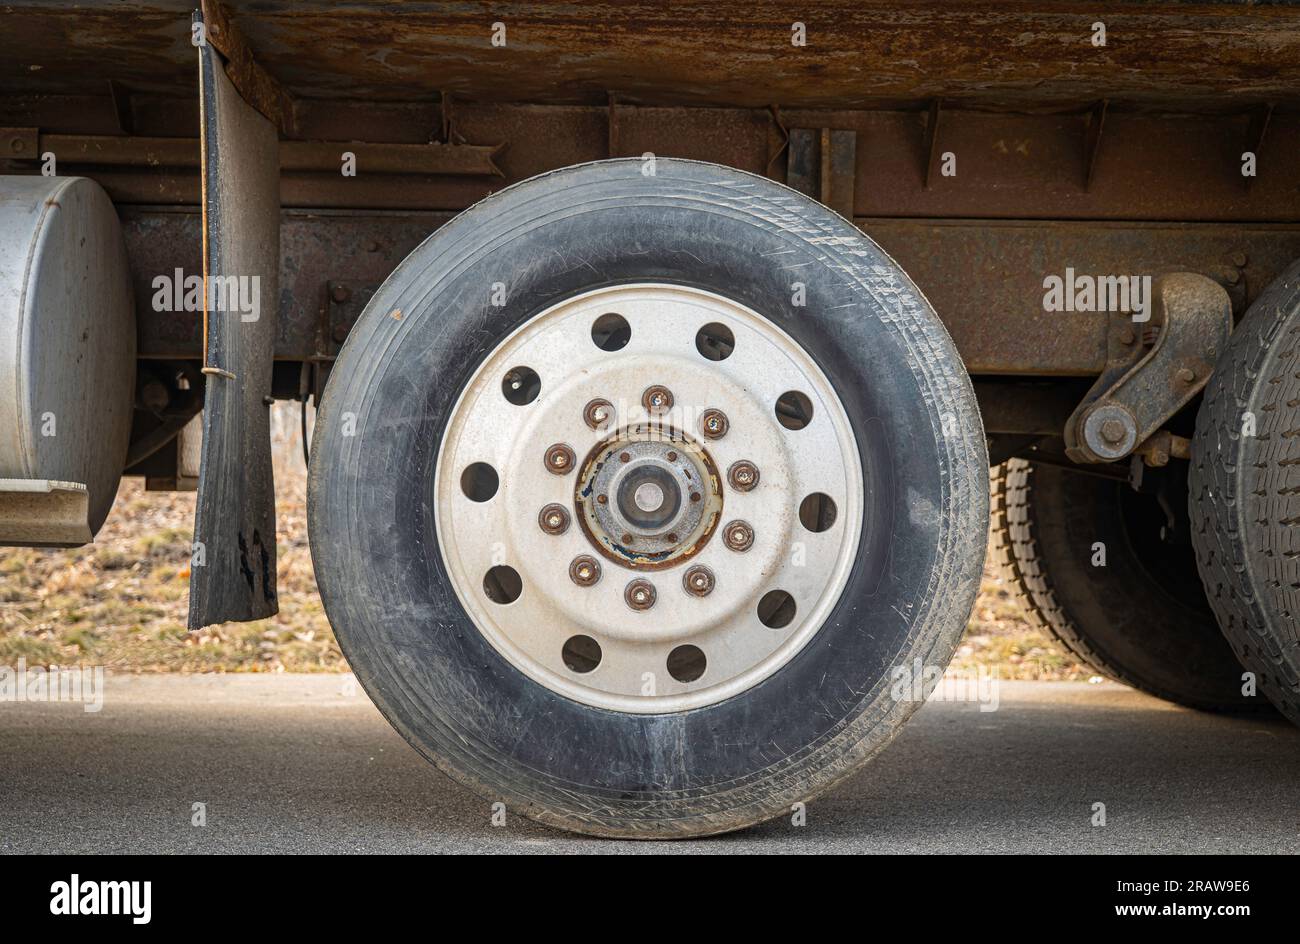 Staubiges LKW-Rad und -Reifen eines LKW mit rundem Kreismuster. Gastank und Schmutzfänger sind ebenfalls zu sehen. Stockfoto